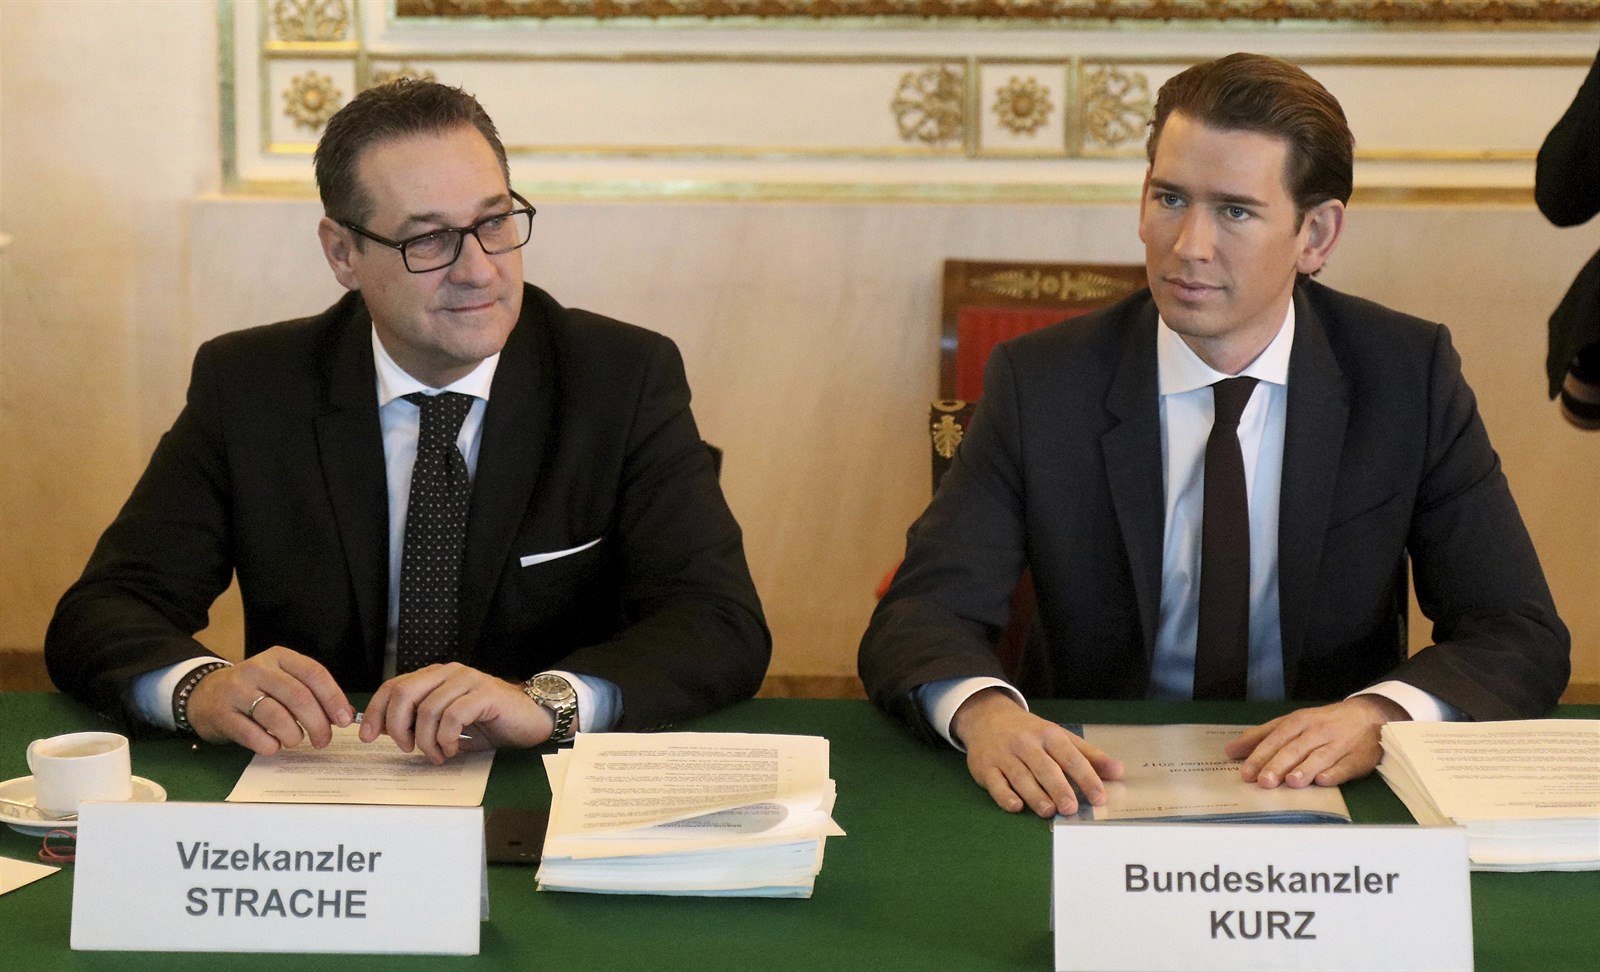 Rakouský kancléř Kurz (ÖVP) a vícekancléř Strache (FPÖ).